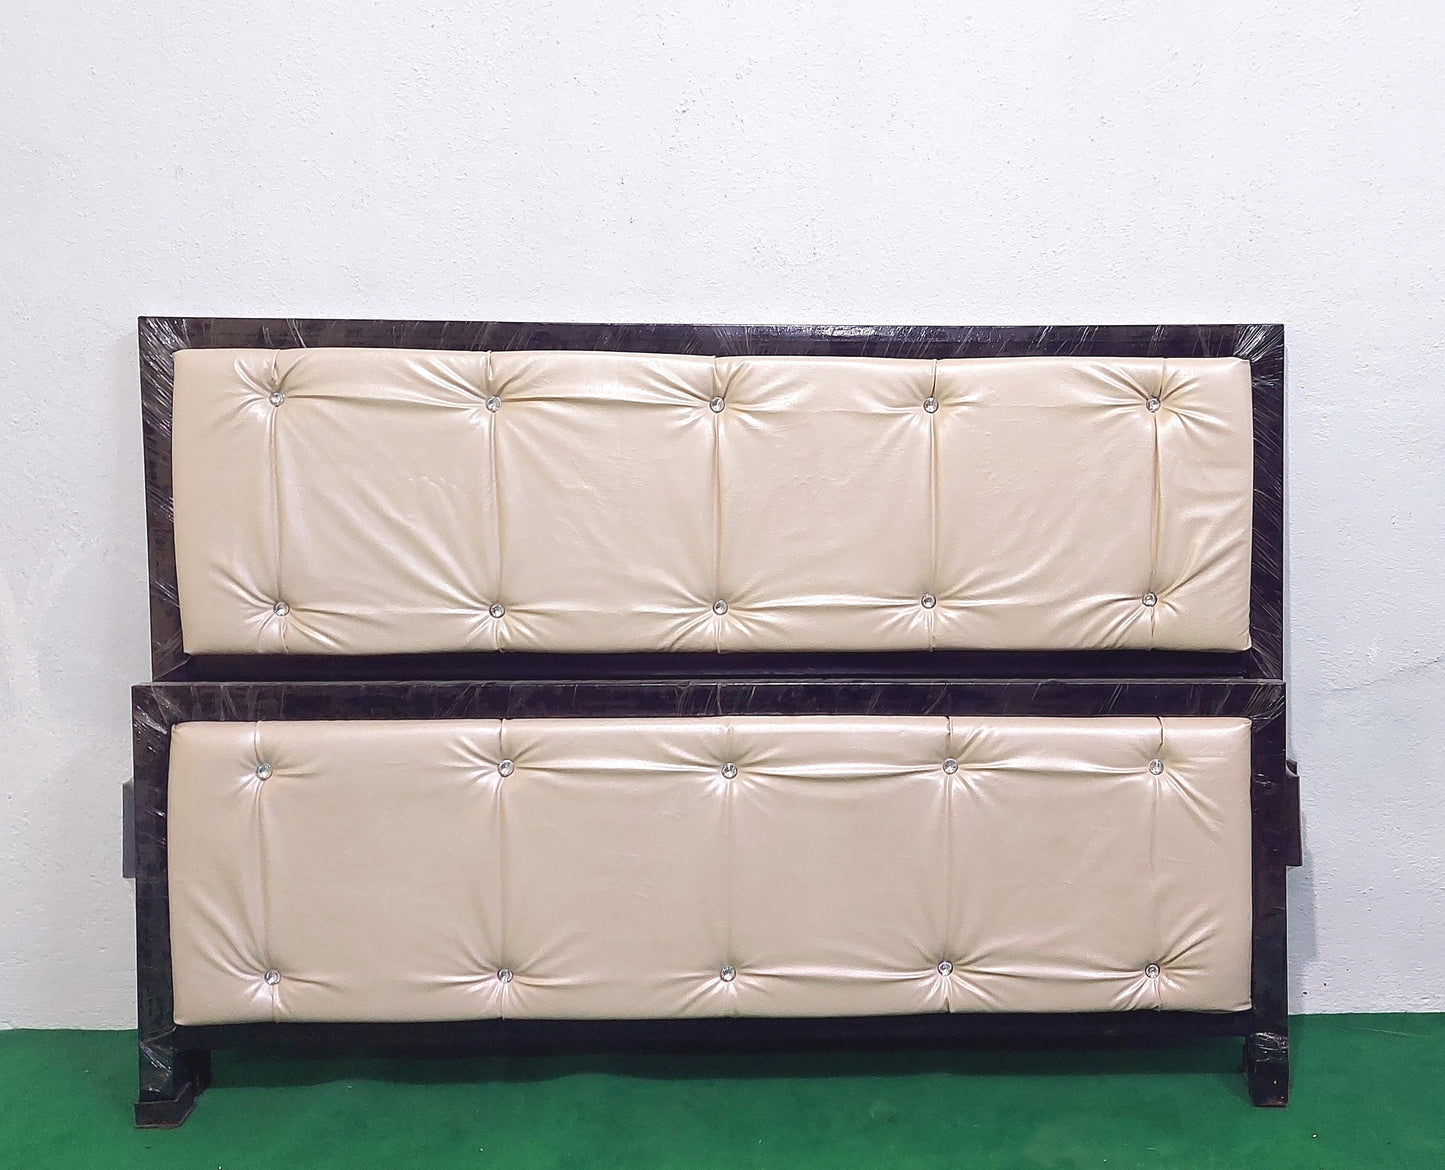 Bowzar Queen Bed 5x6.5 Feet Both Side Cushion Cream